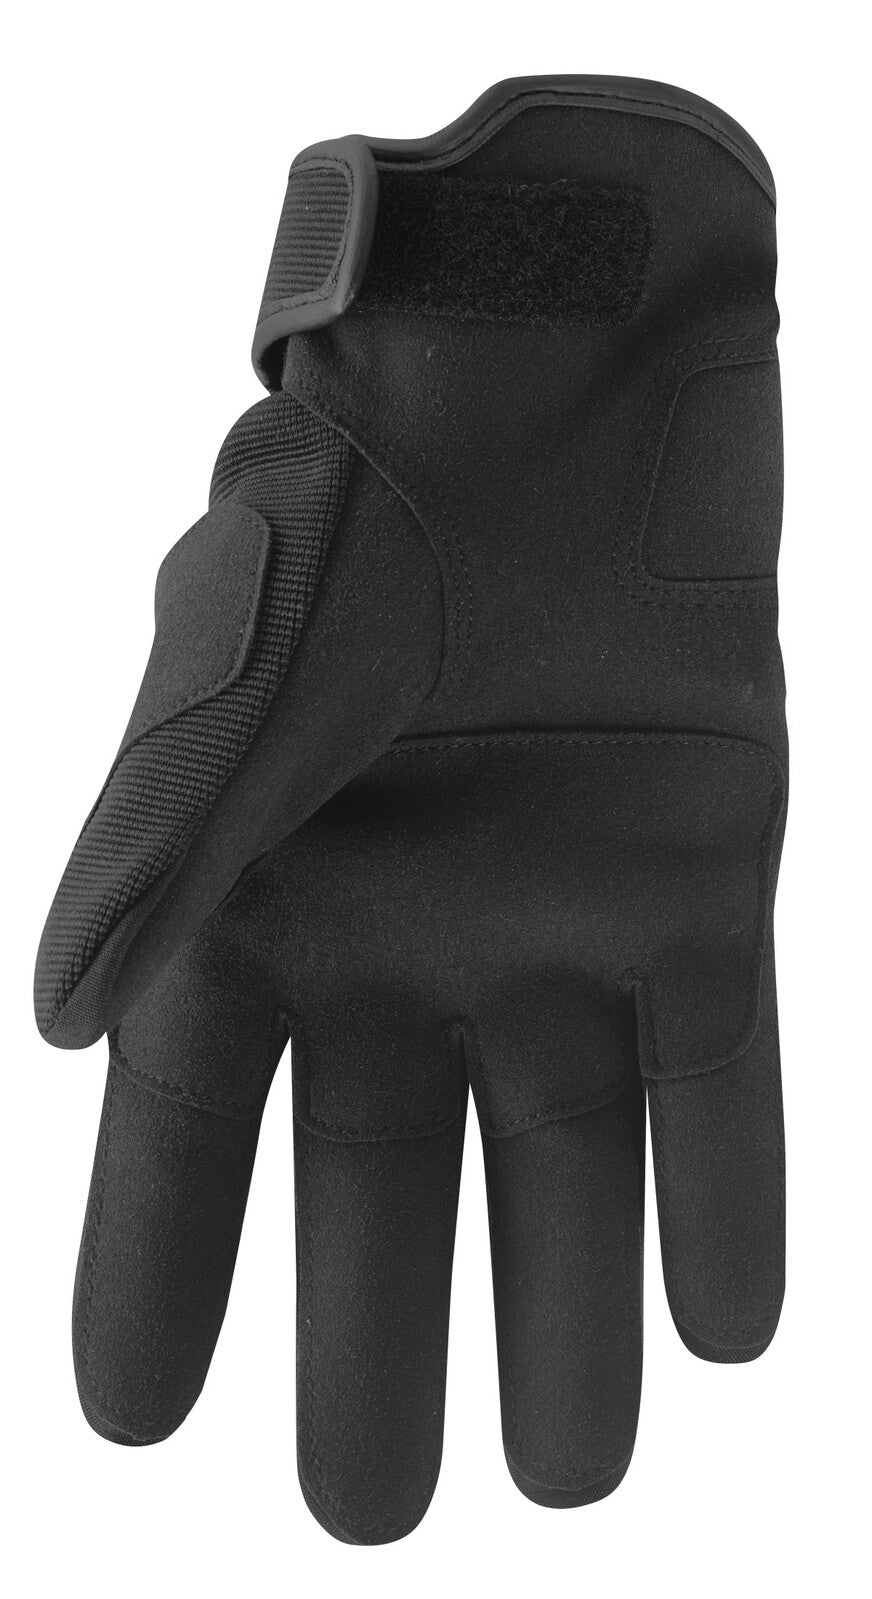 Thor Range Gloves - Black